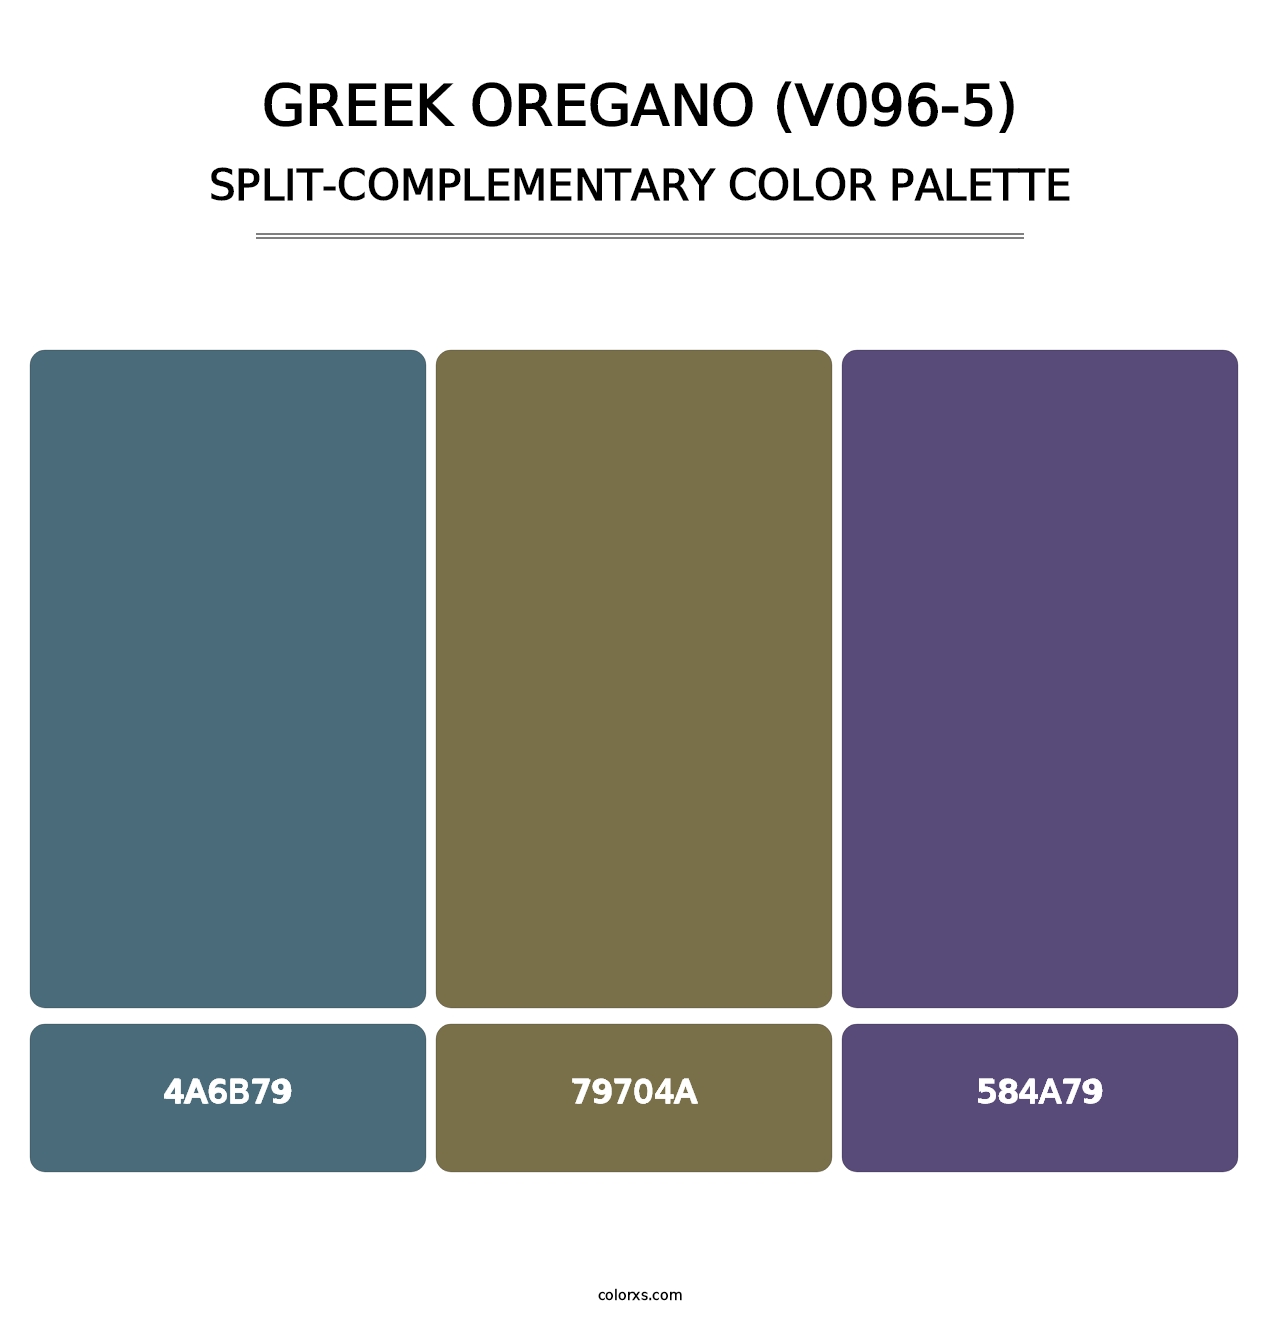 Greek Oregano (V096-5) - Split-Complementary Color Palette